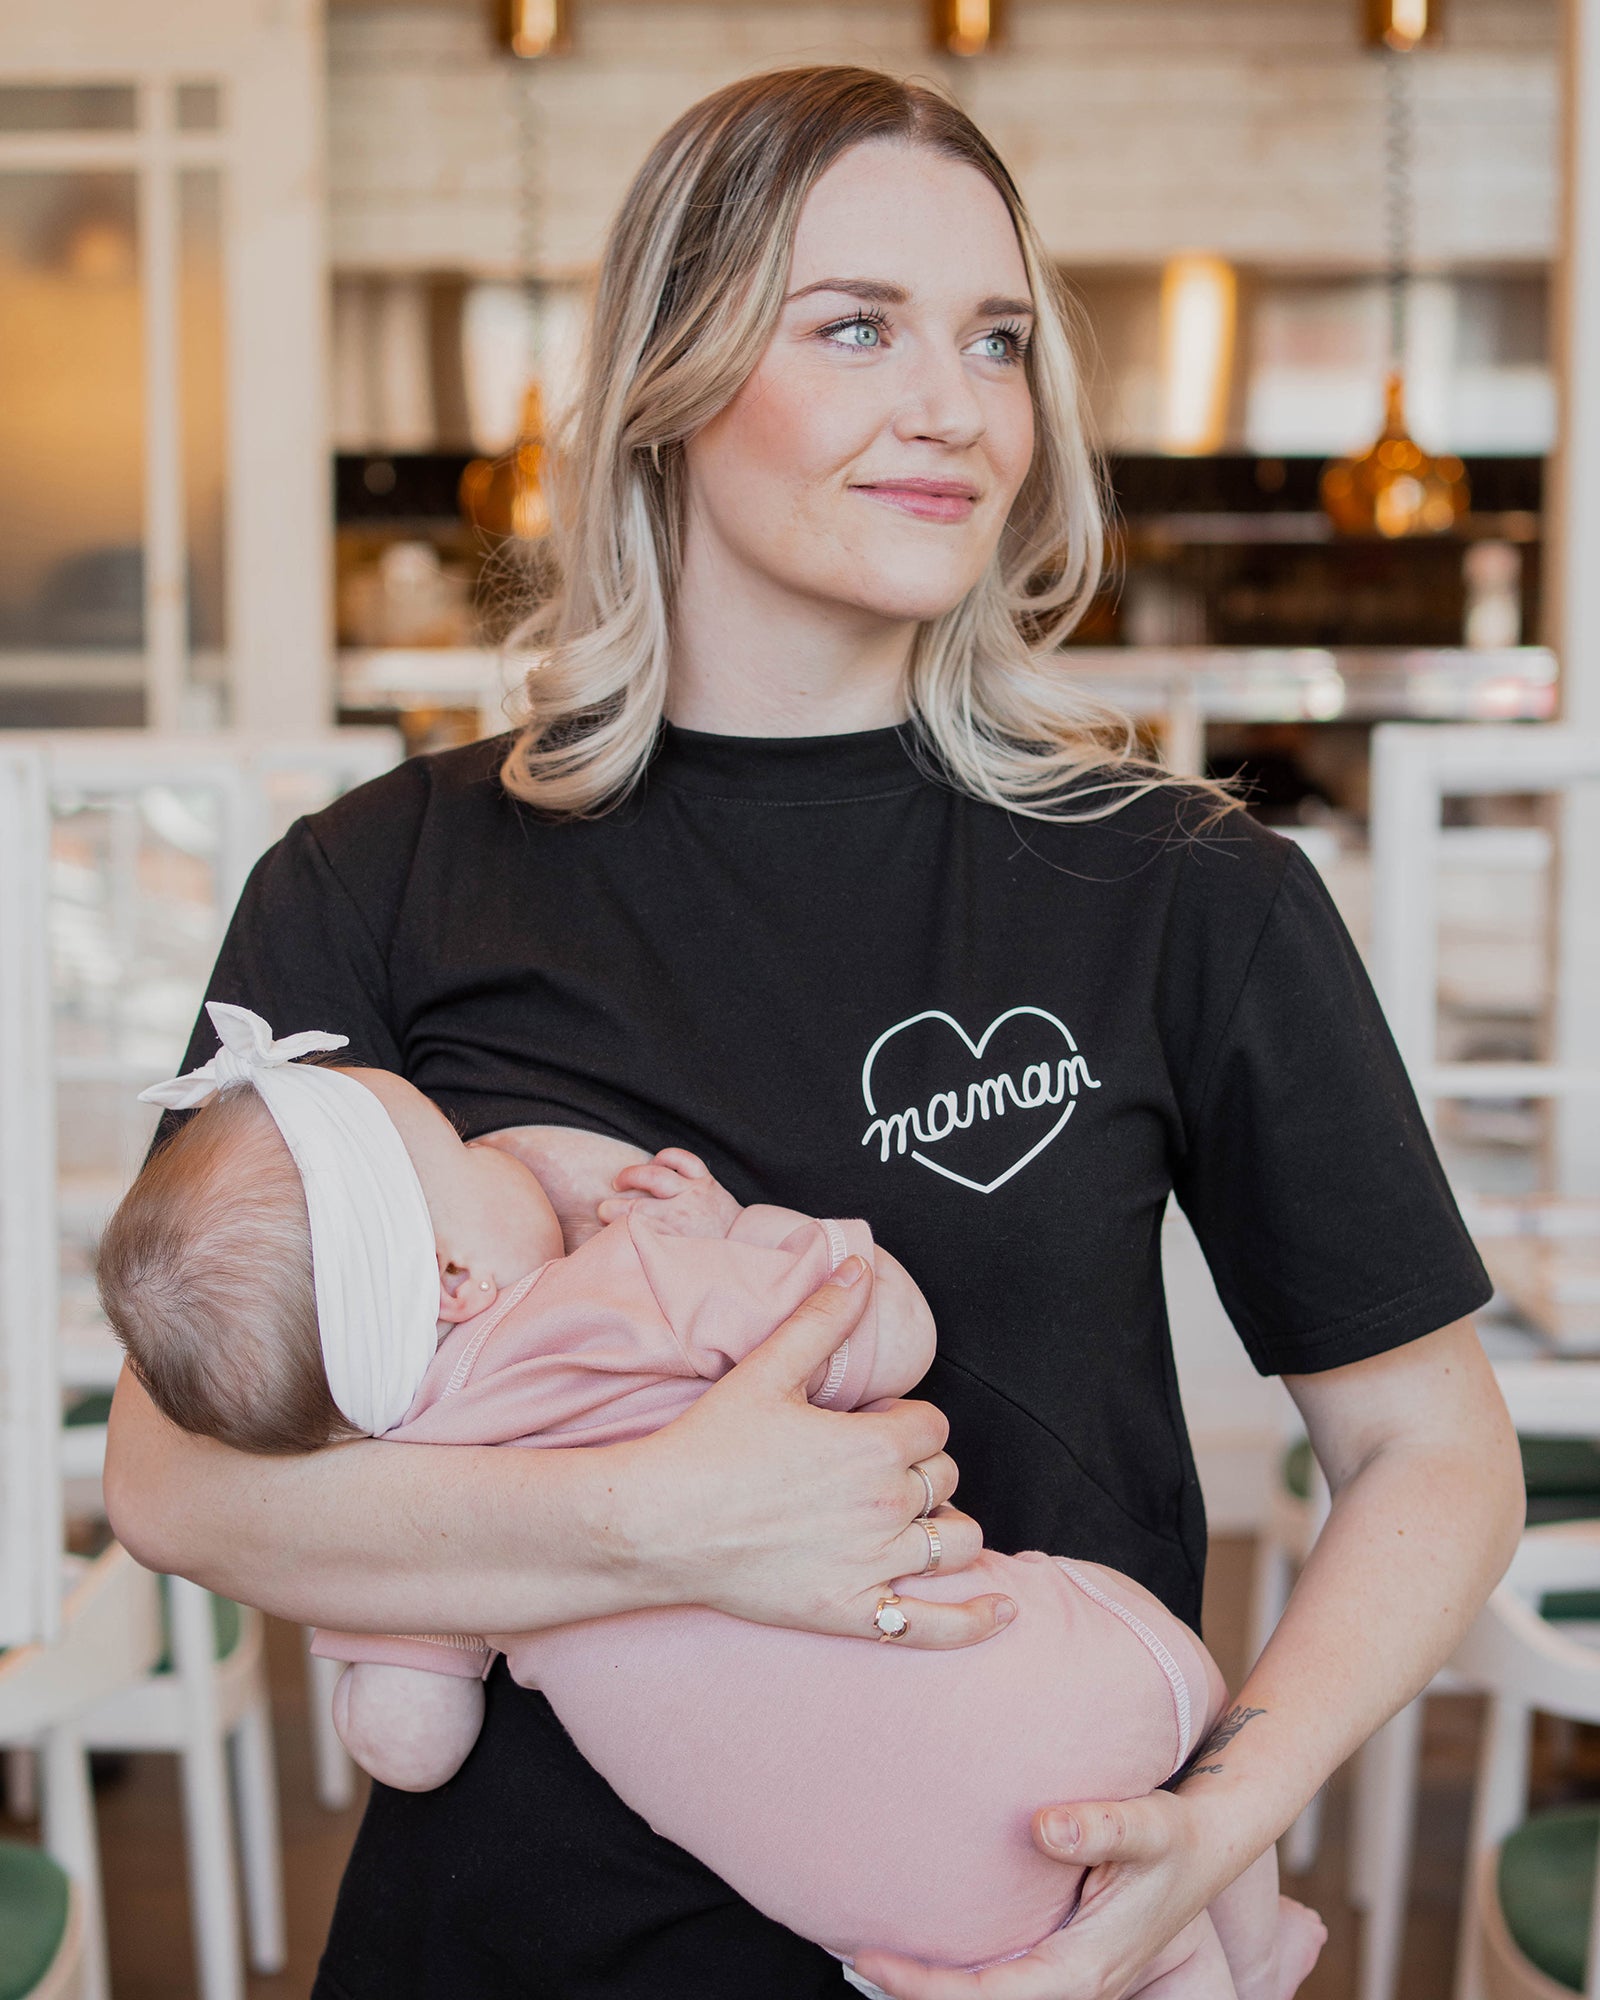 Vêtements d'allaitement et maternité – Bébé de lait